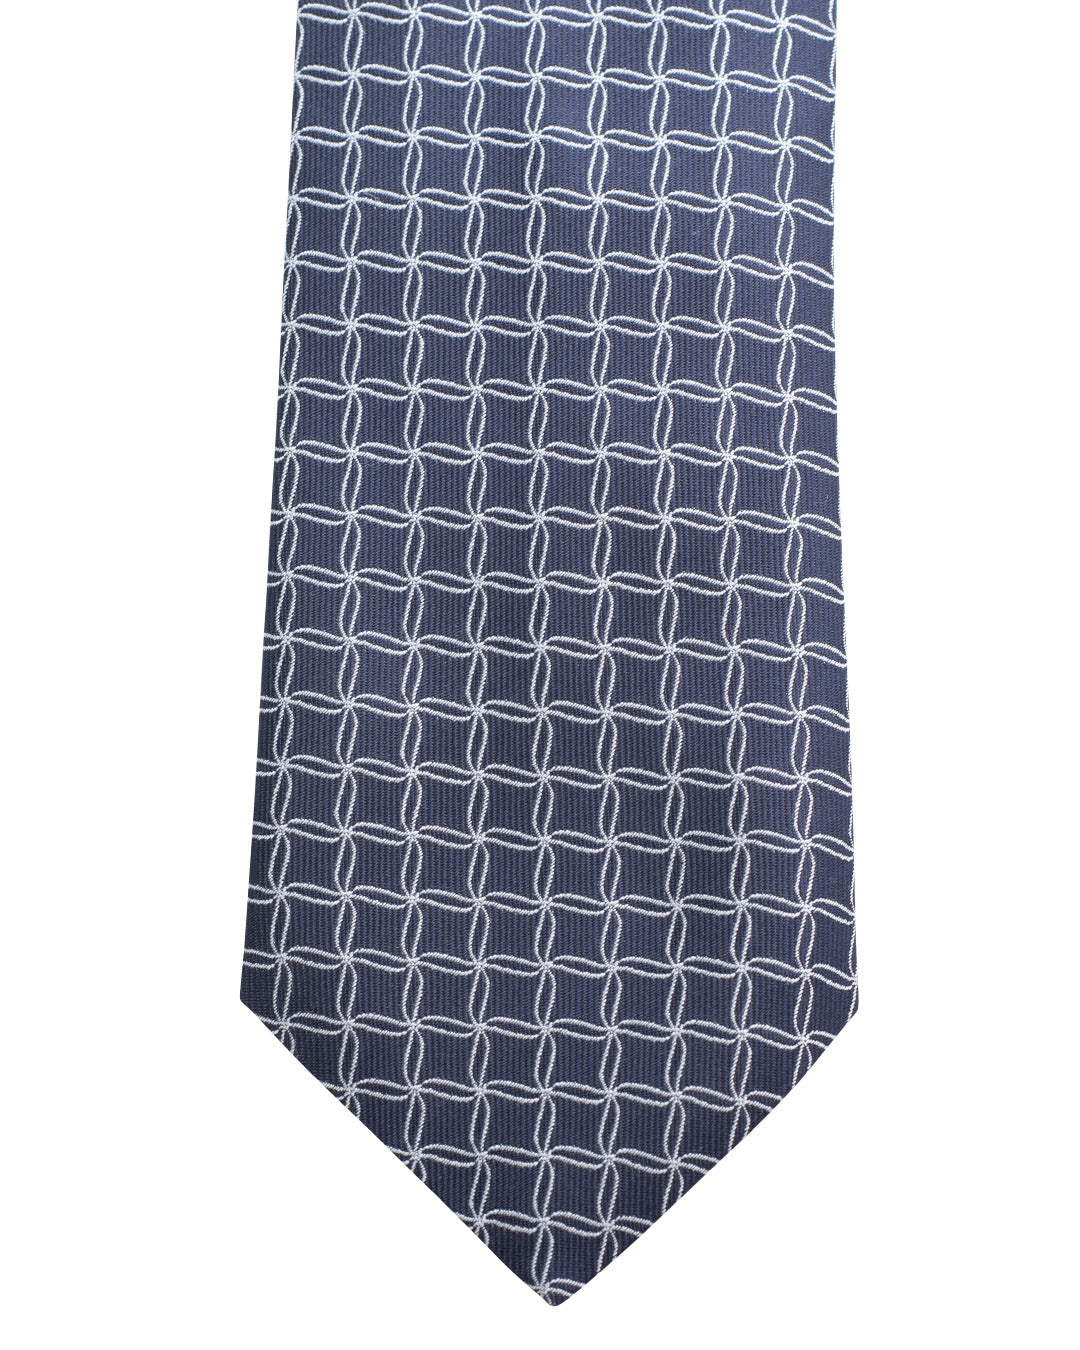 Navy Net Pattern Twill Weave Italian Silk Tie